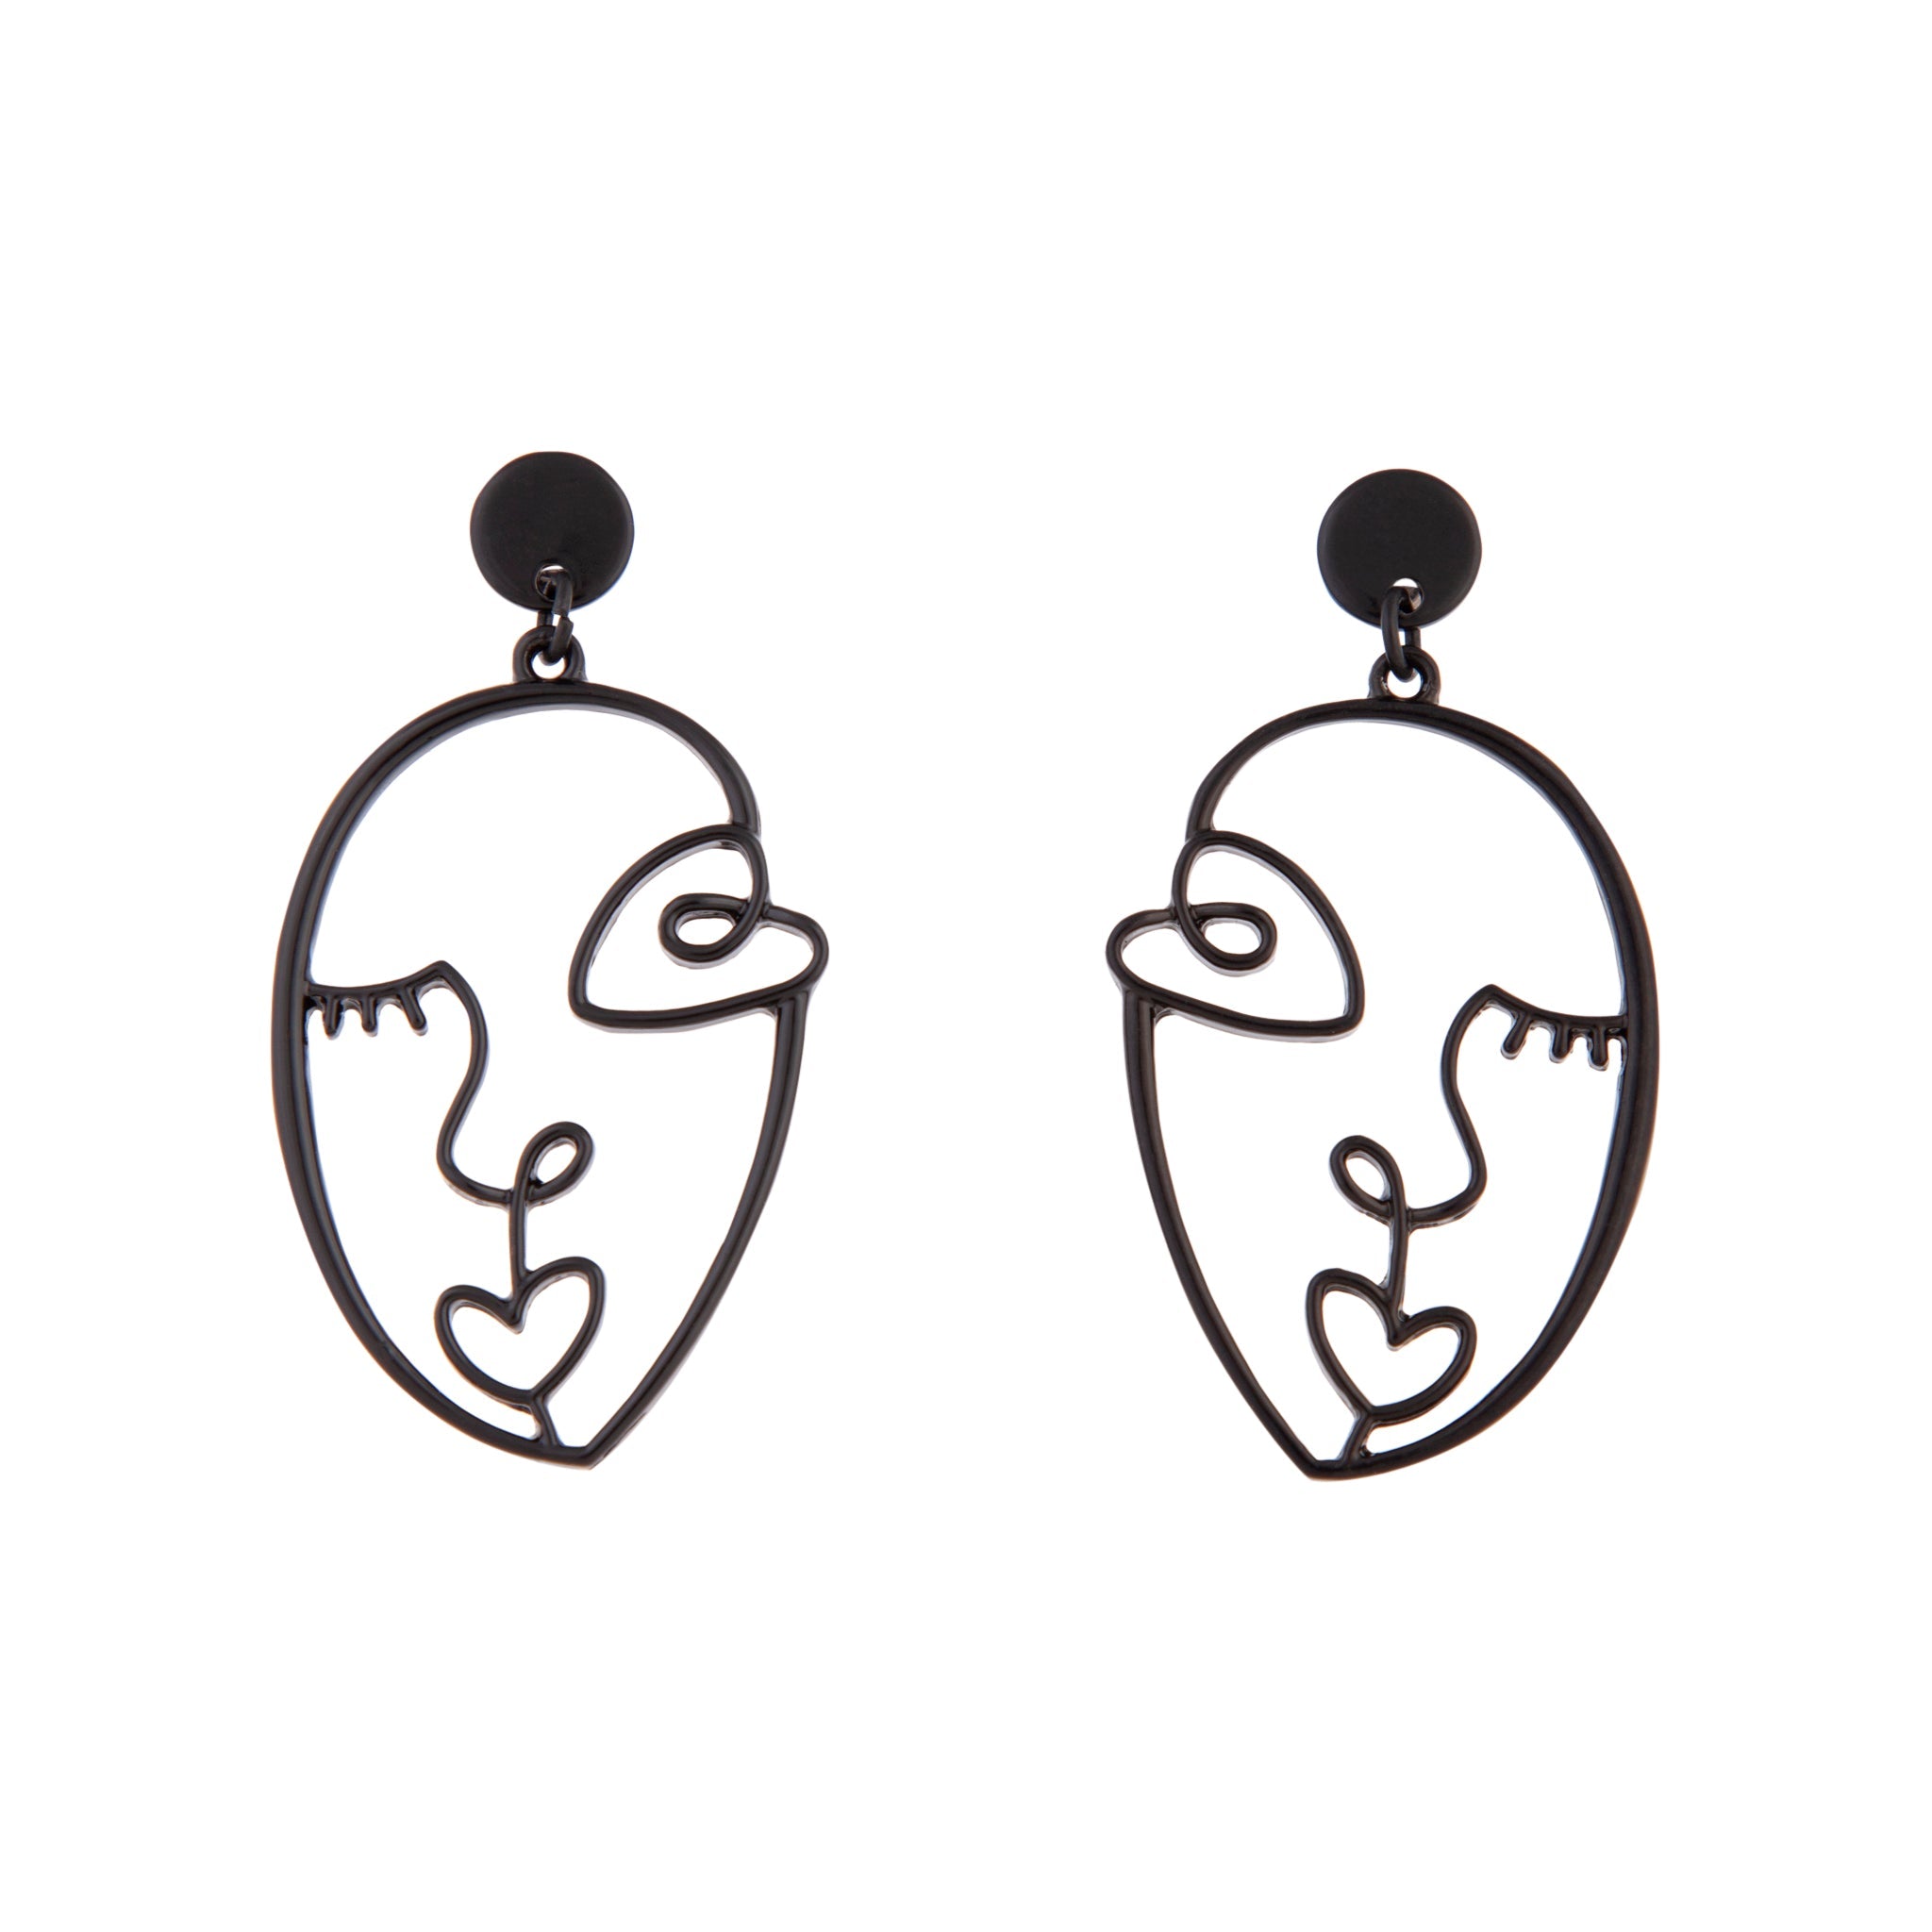 The Louise Earrings - Black Art Deco Statement Earrings by YSM Designs